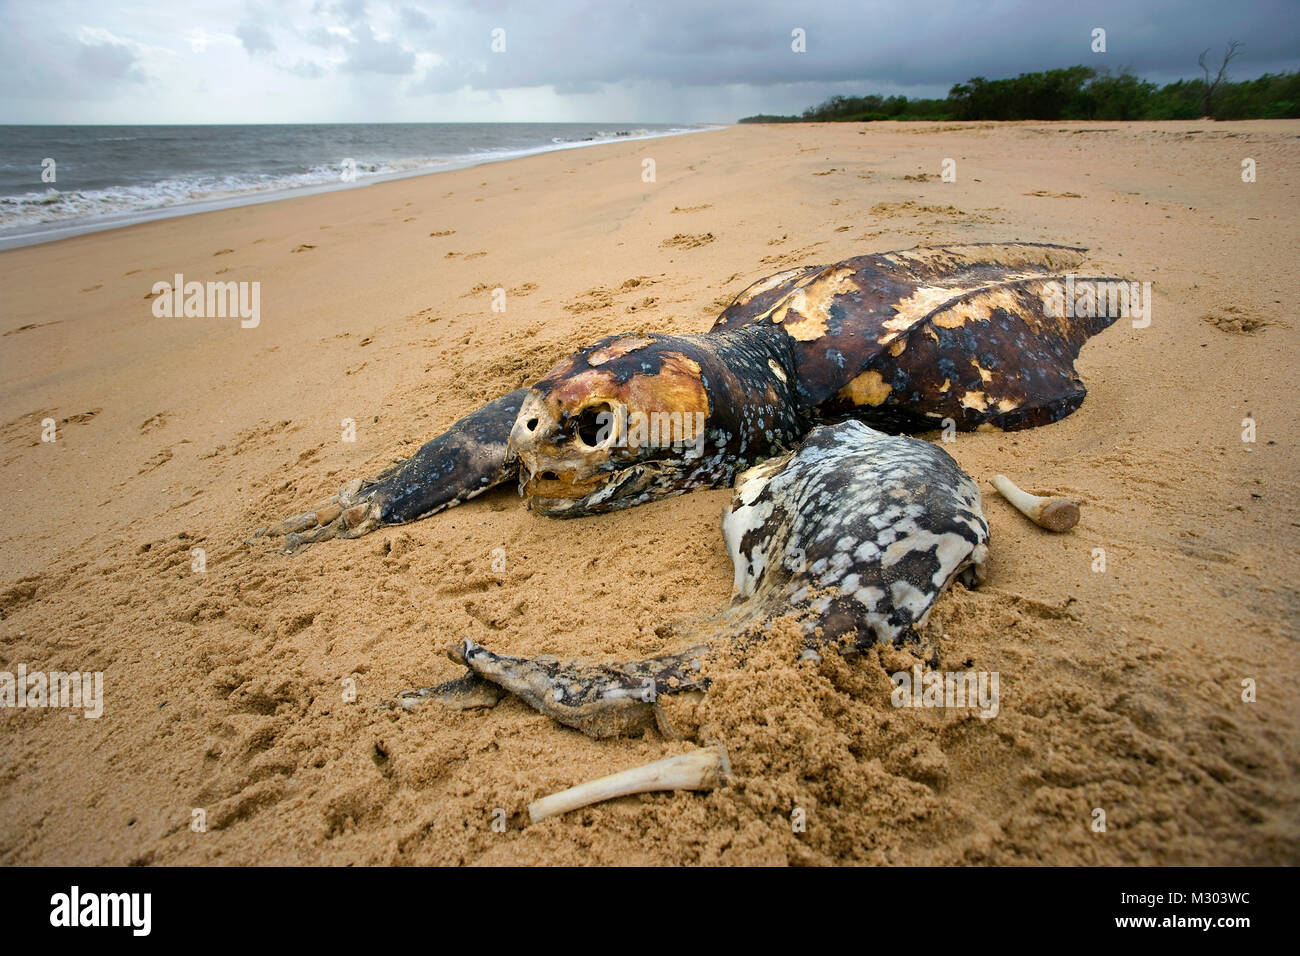 Le Suriname, Matapica Parc National. Carcasse de la tortue luth. (Dermochelys coriacea). Tués par les filets de pêche. Banque D'Images